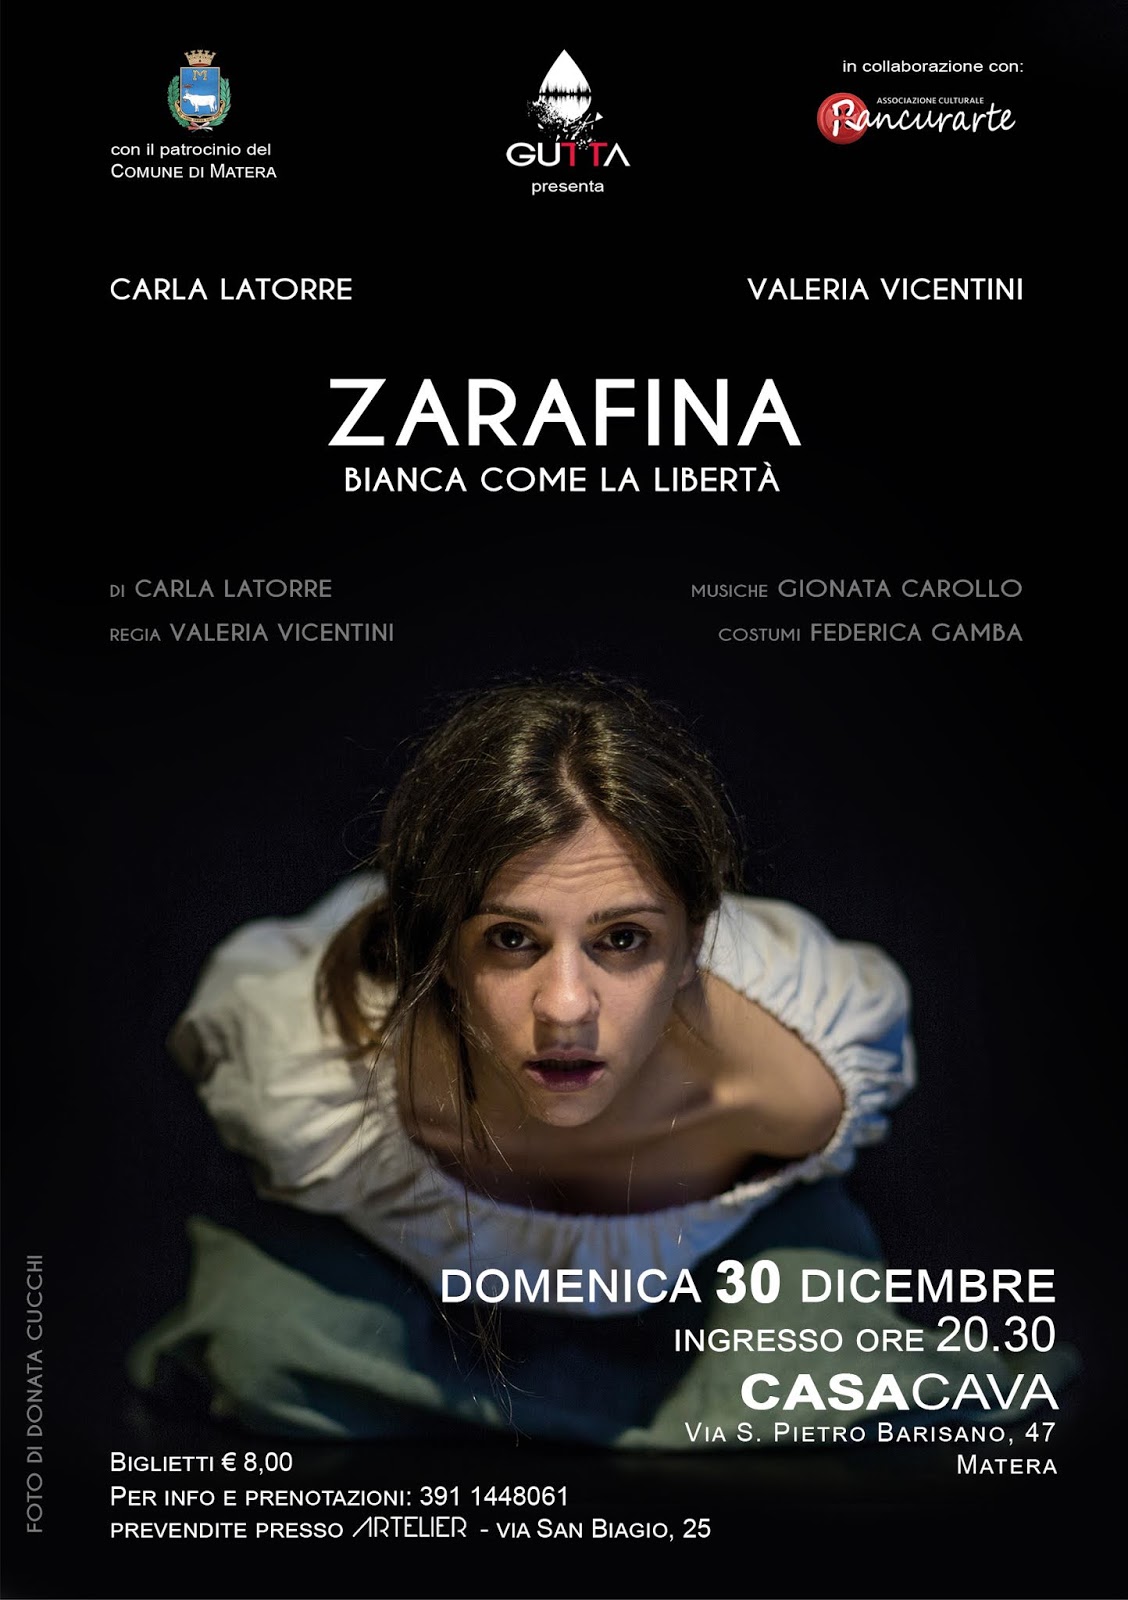 “Zarafina”, la storia della donna combattente raccontata da Carla Latorre e Valeria Vicentini. Appuntamento il 30 a Matera a Casa Cava